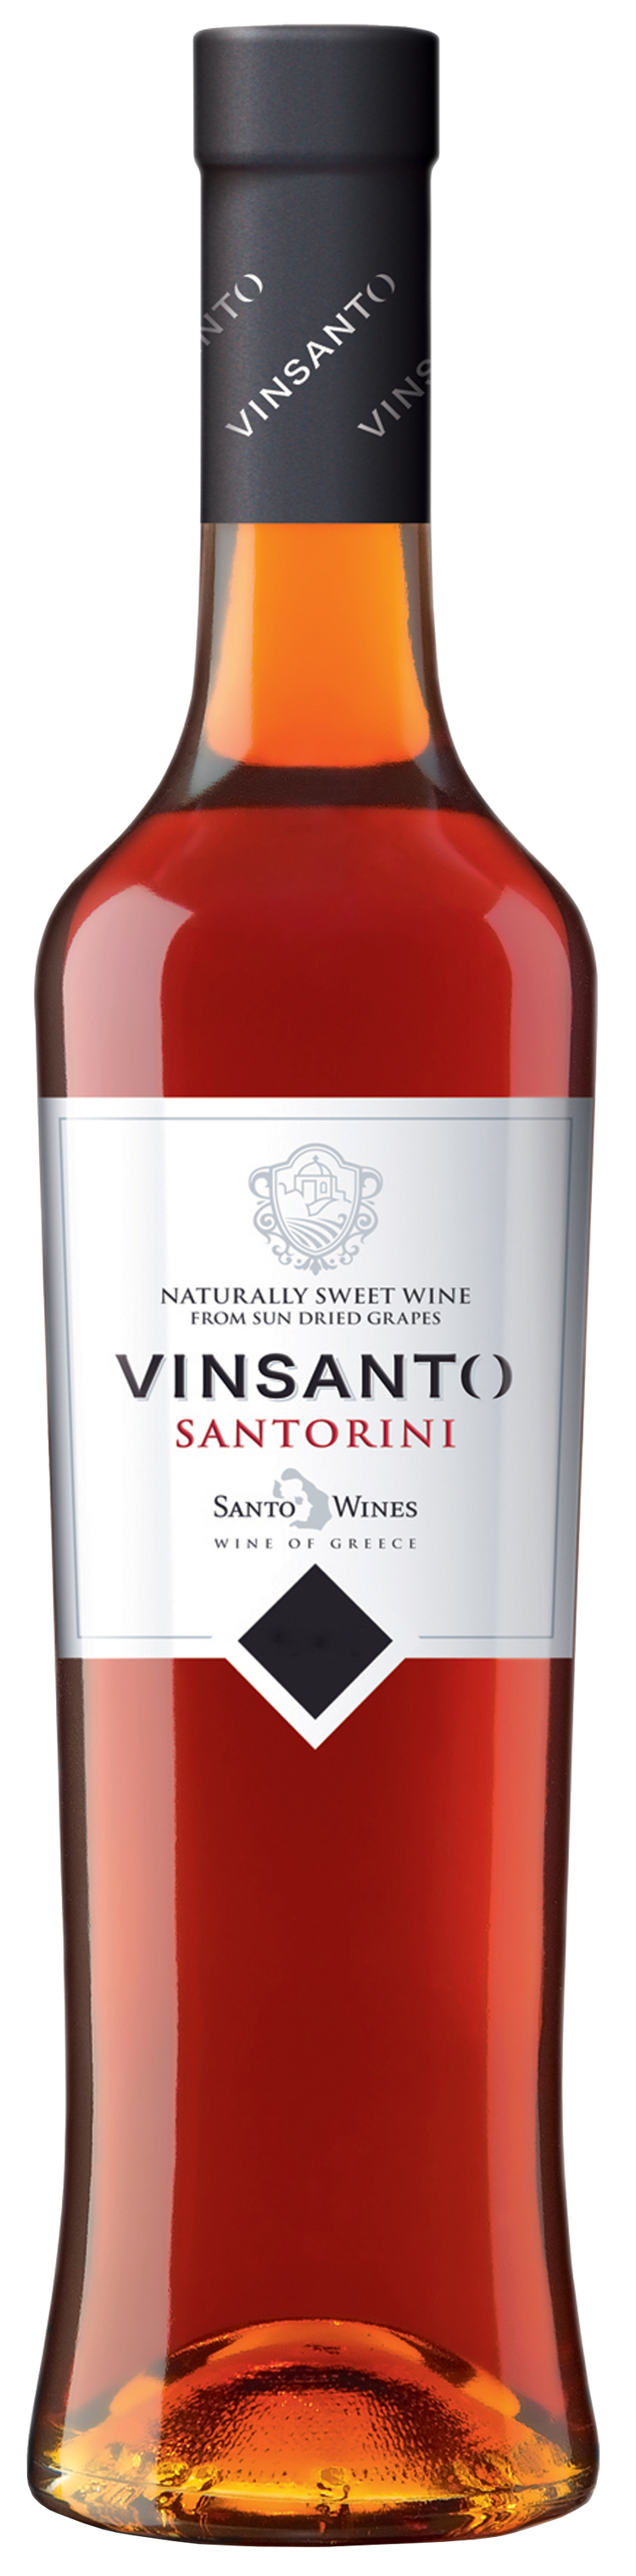 SANTO WINES   SANTORINI VINSANTO (500ml) 2010